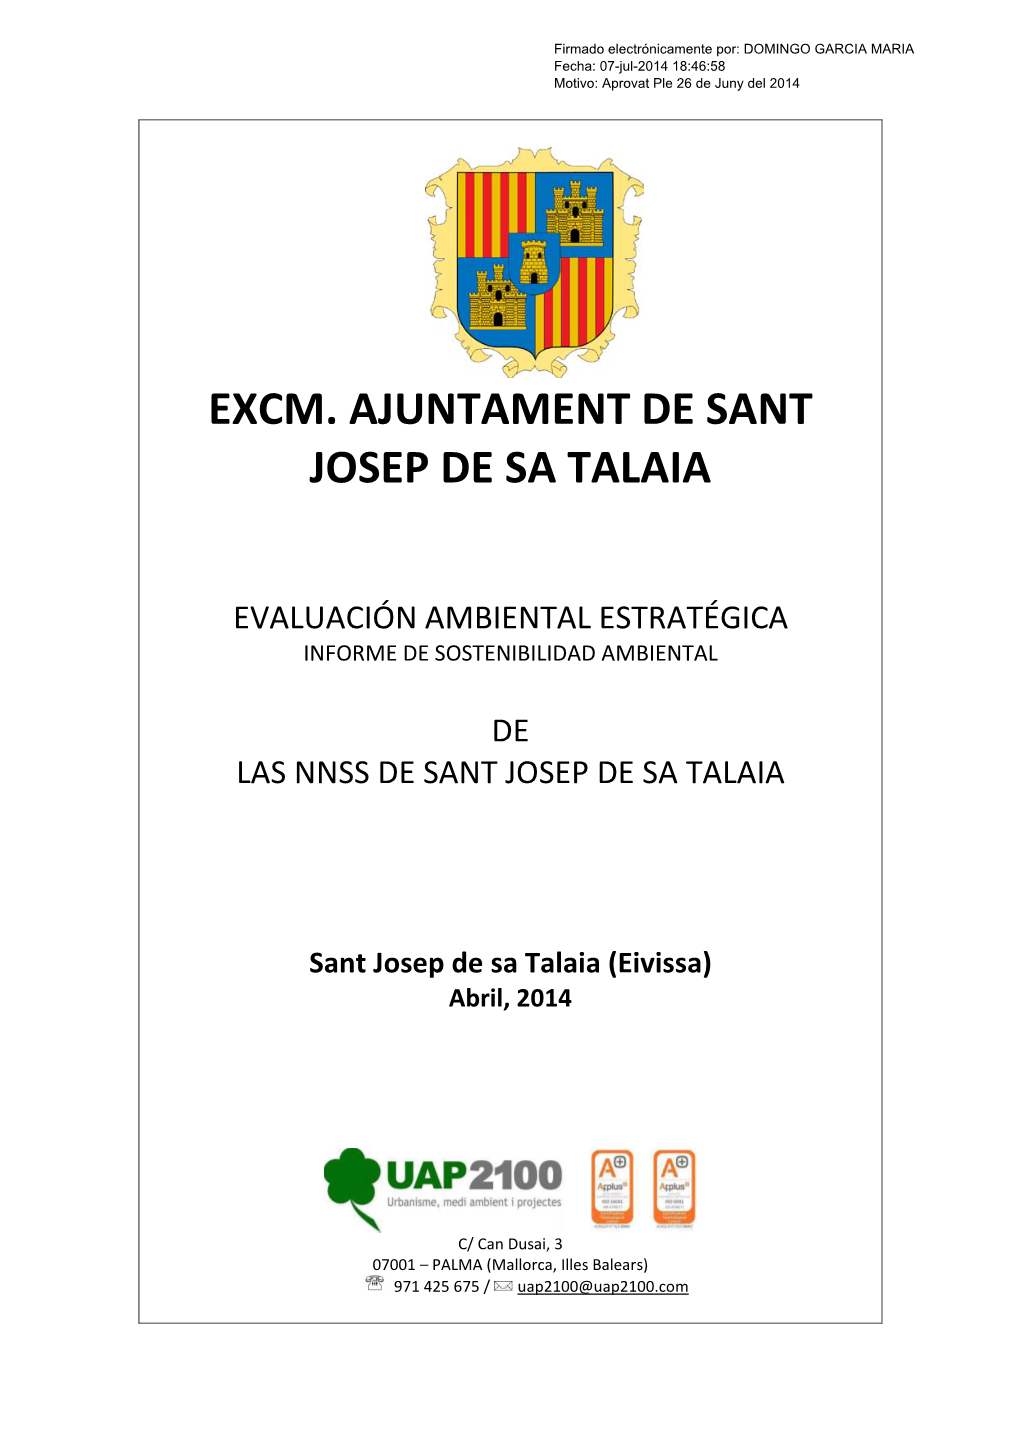 Excm. Ajuntament De Sant Josep De Sa Talaia